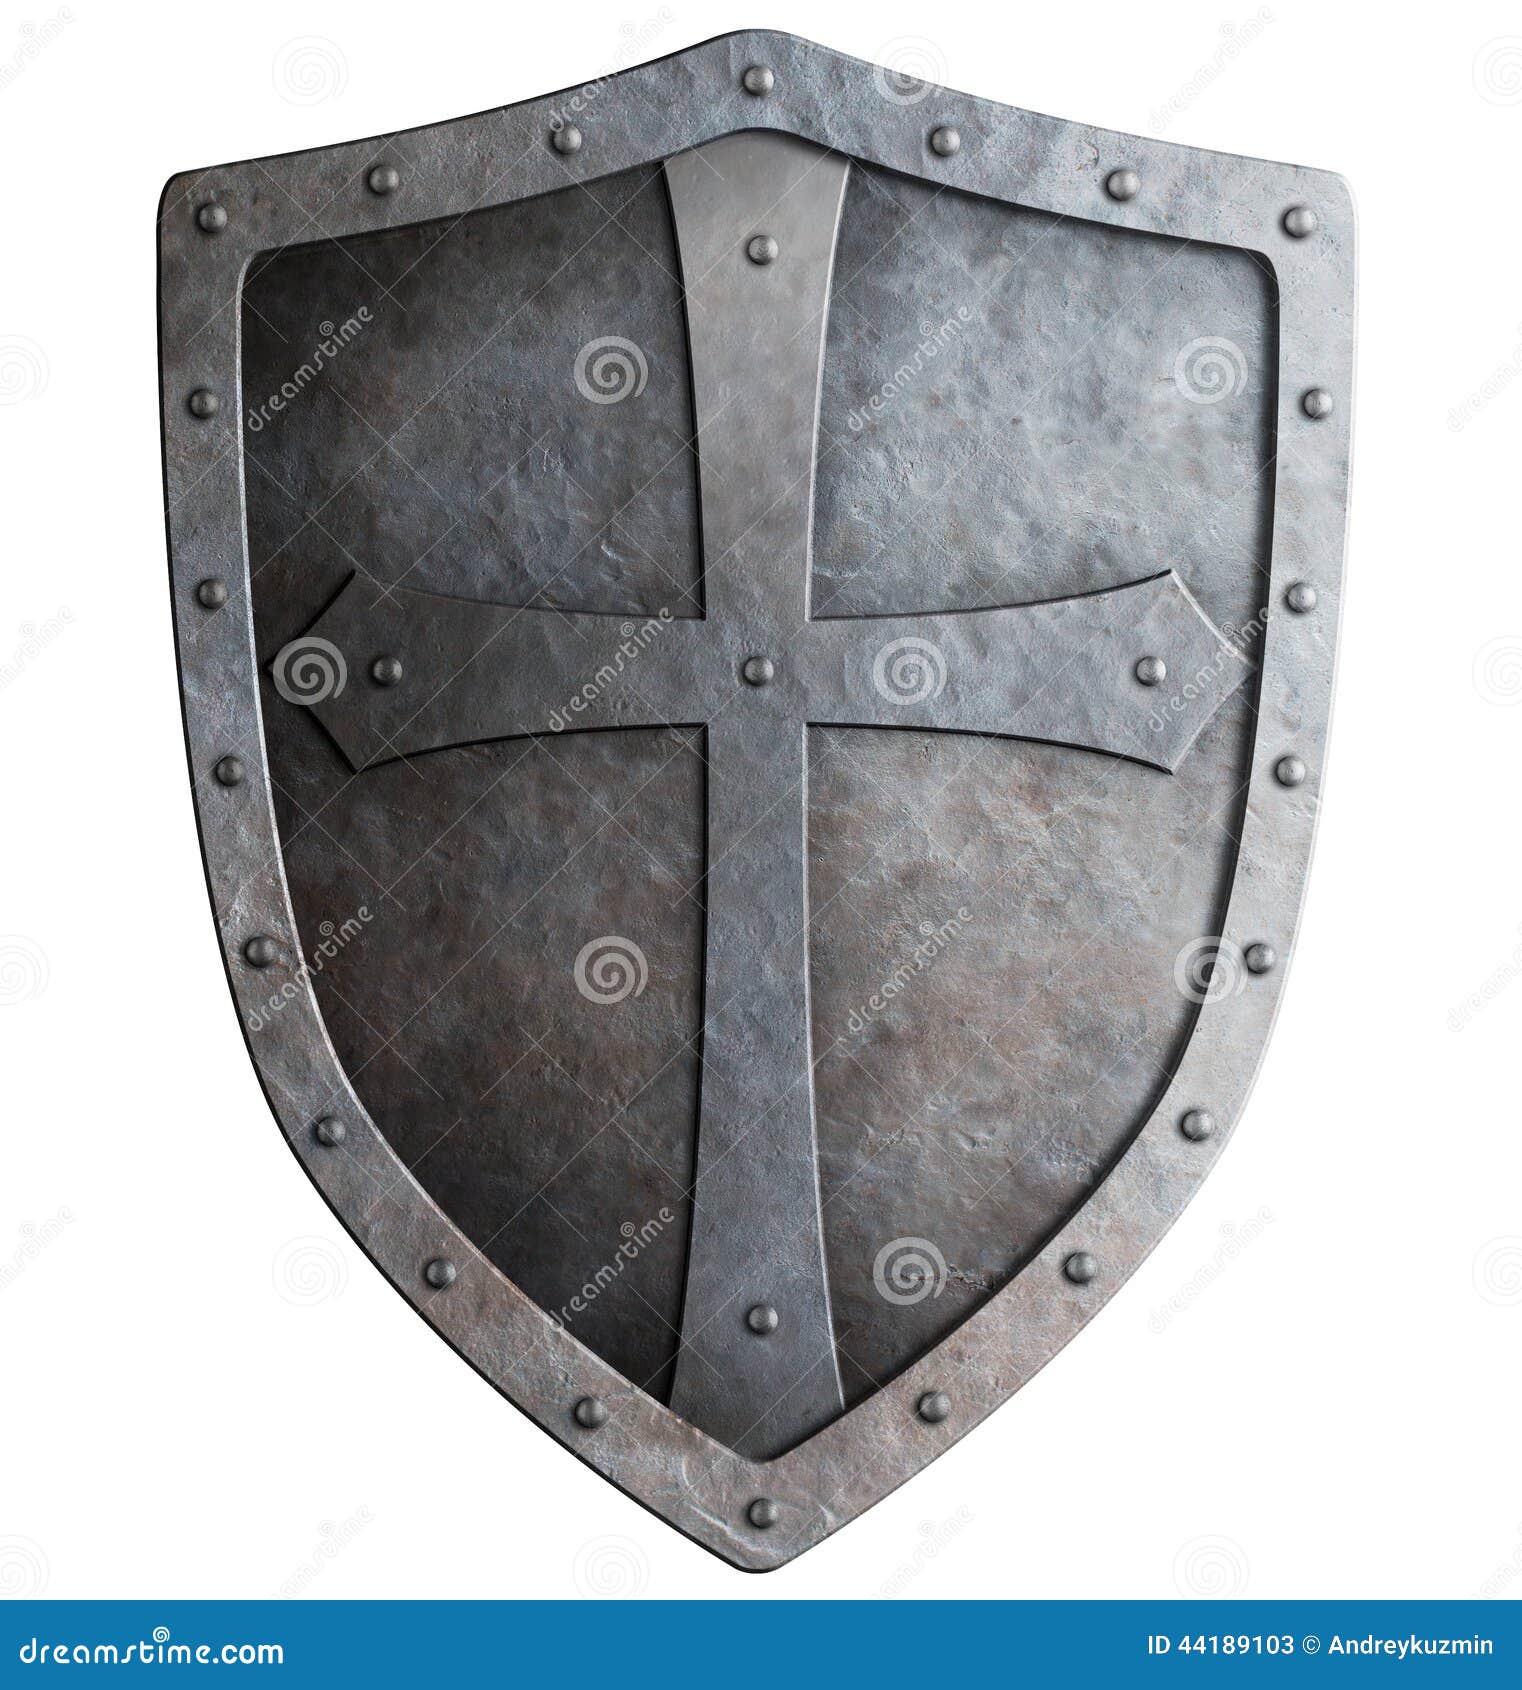 medieval crusader knight's shield 